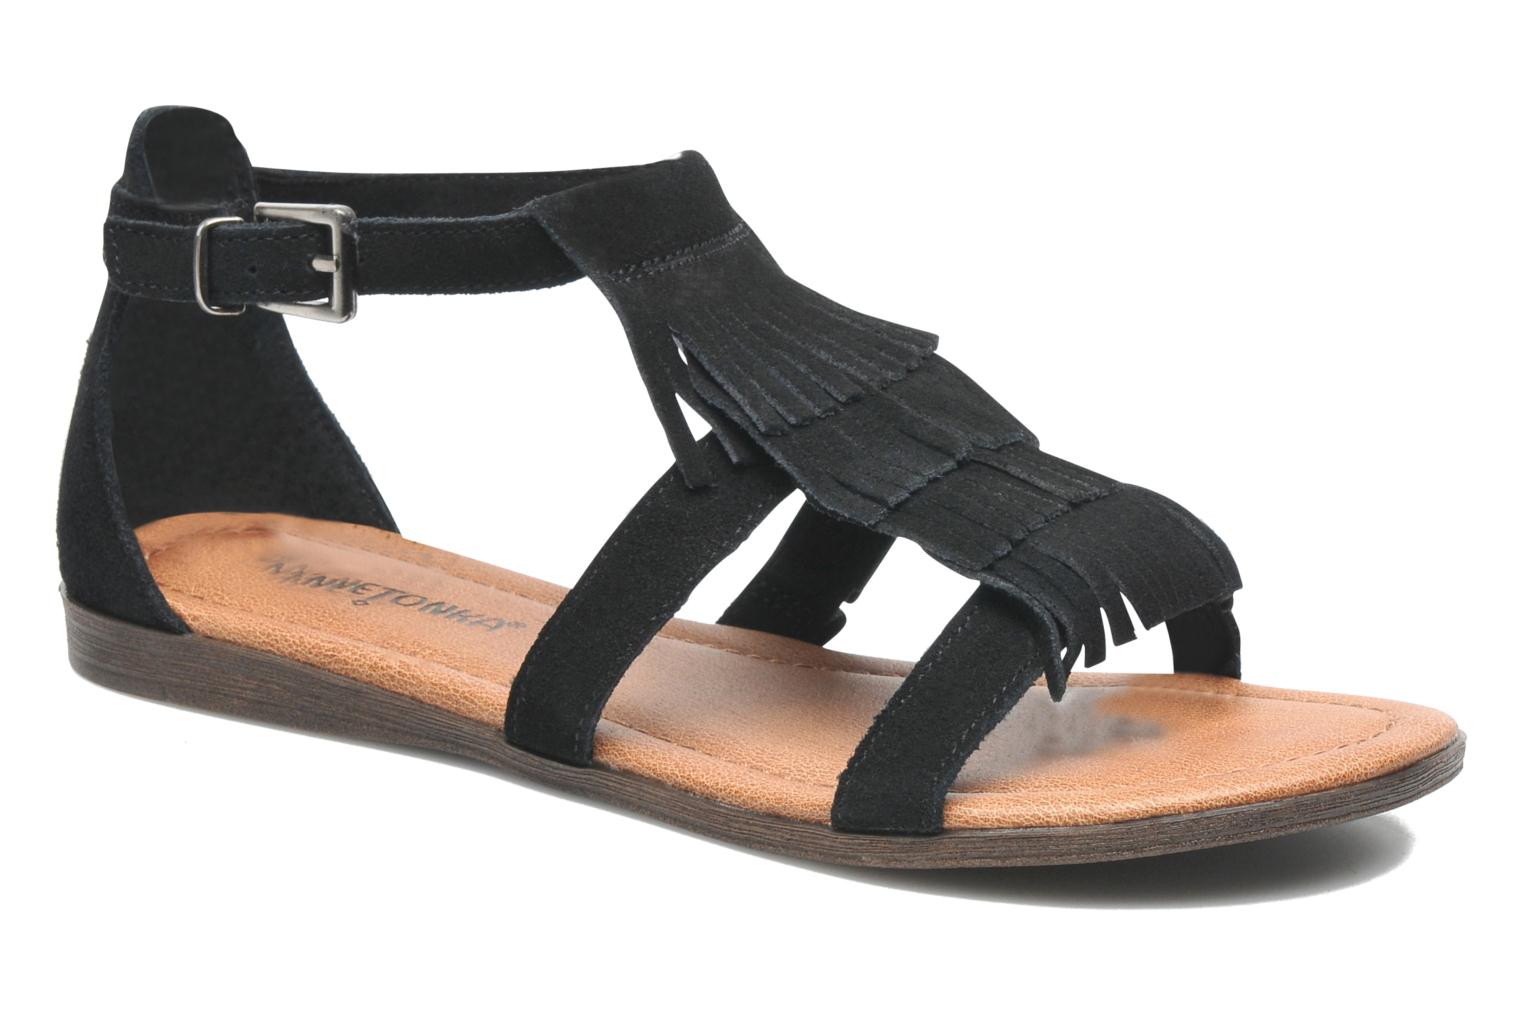 Minnetonka Maui (Noir) - Sandales et nu-pieds chez Sarenza (94994)